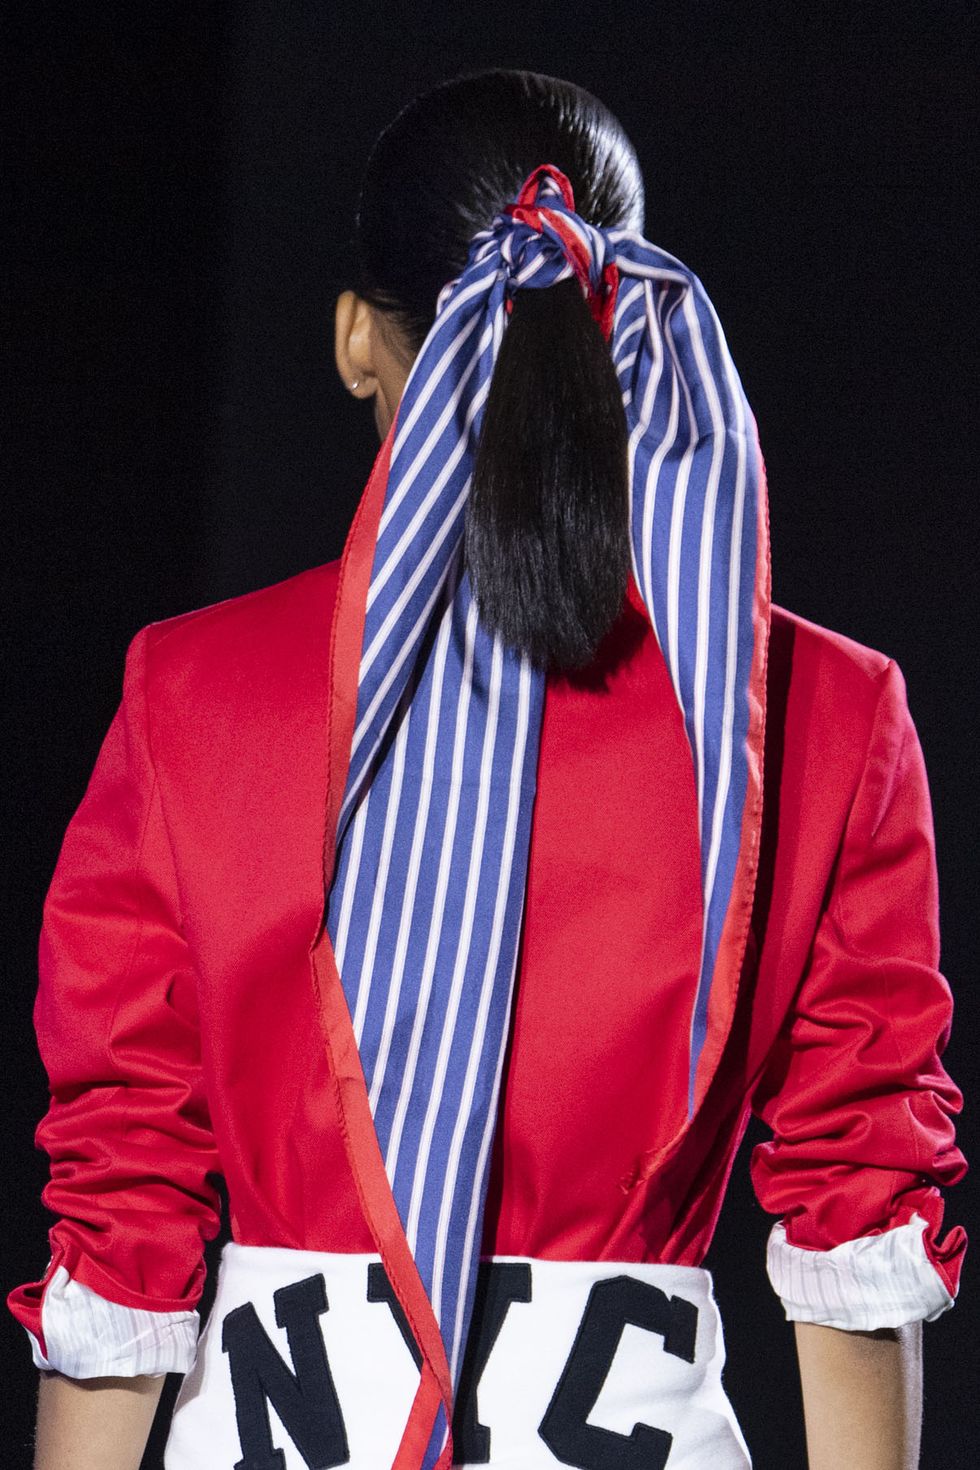 New York Fashion Week hair scarf